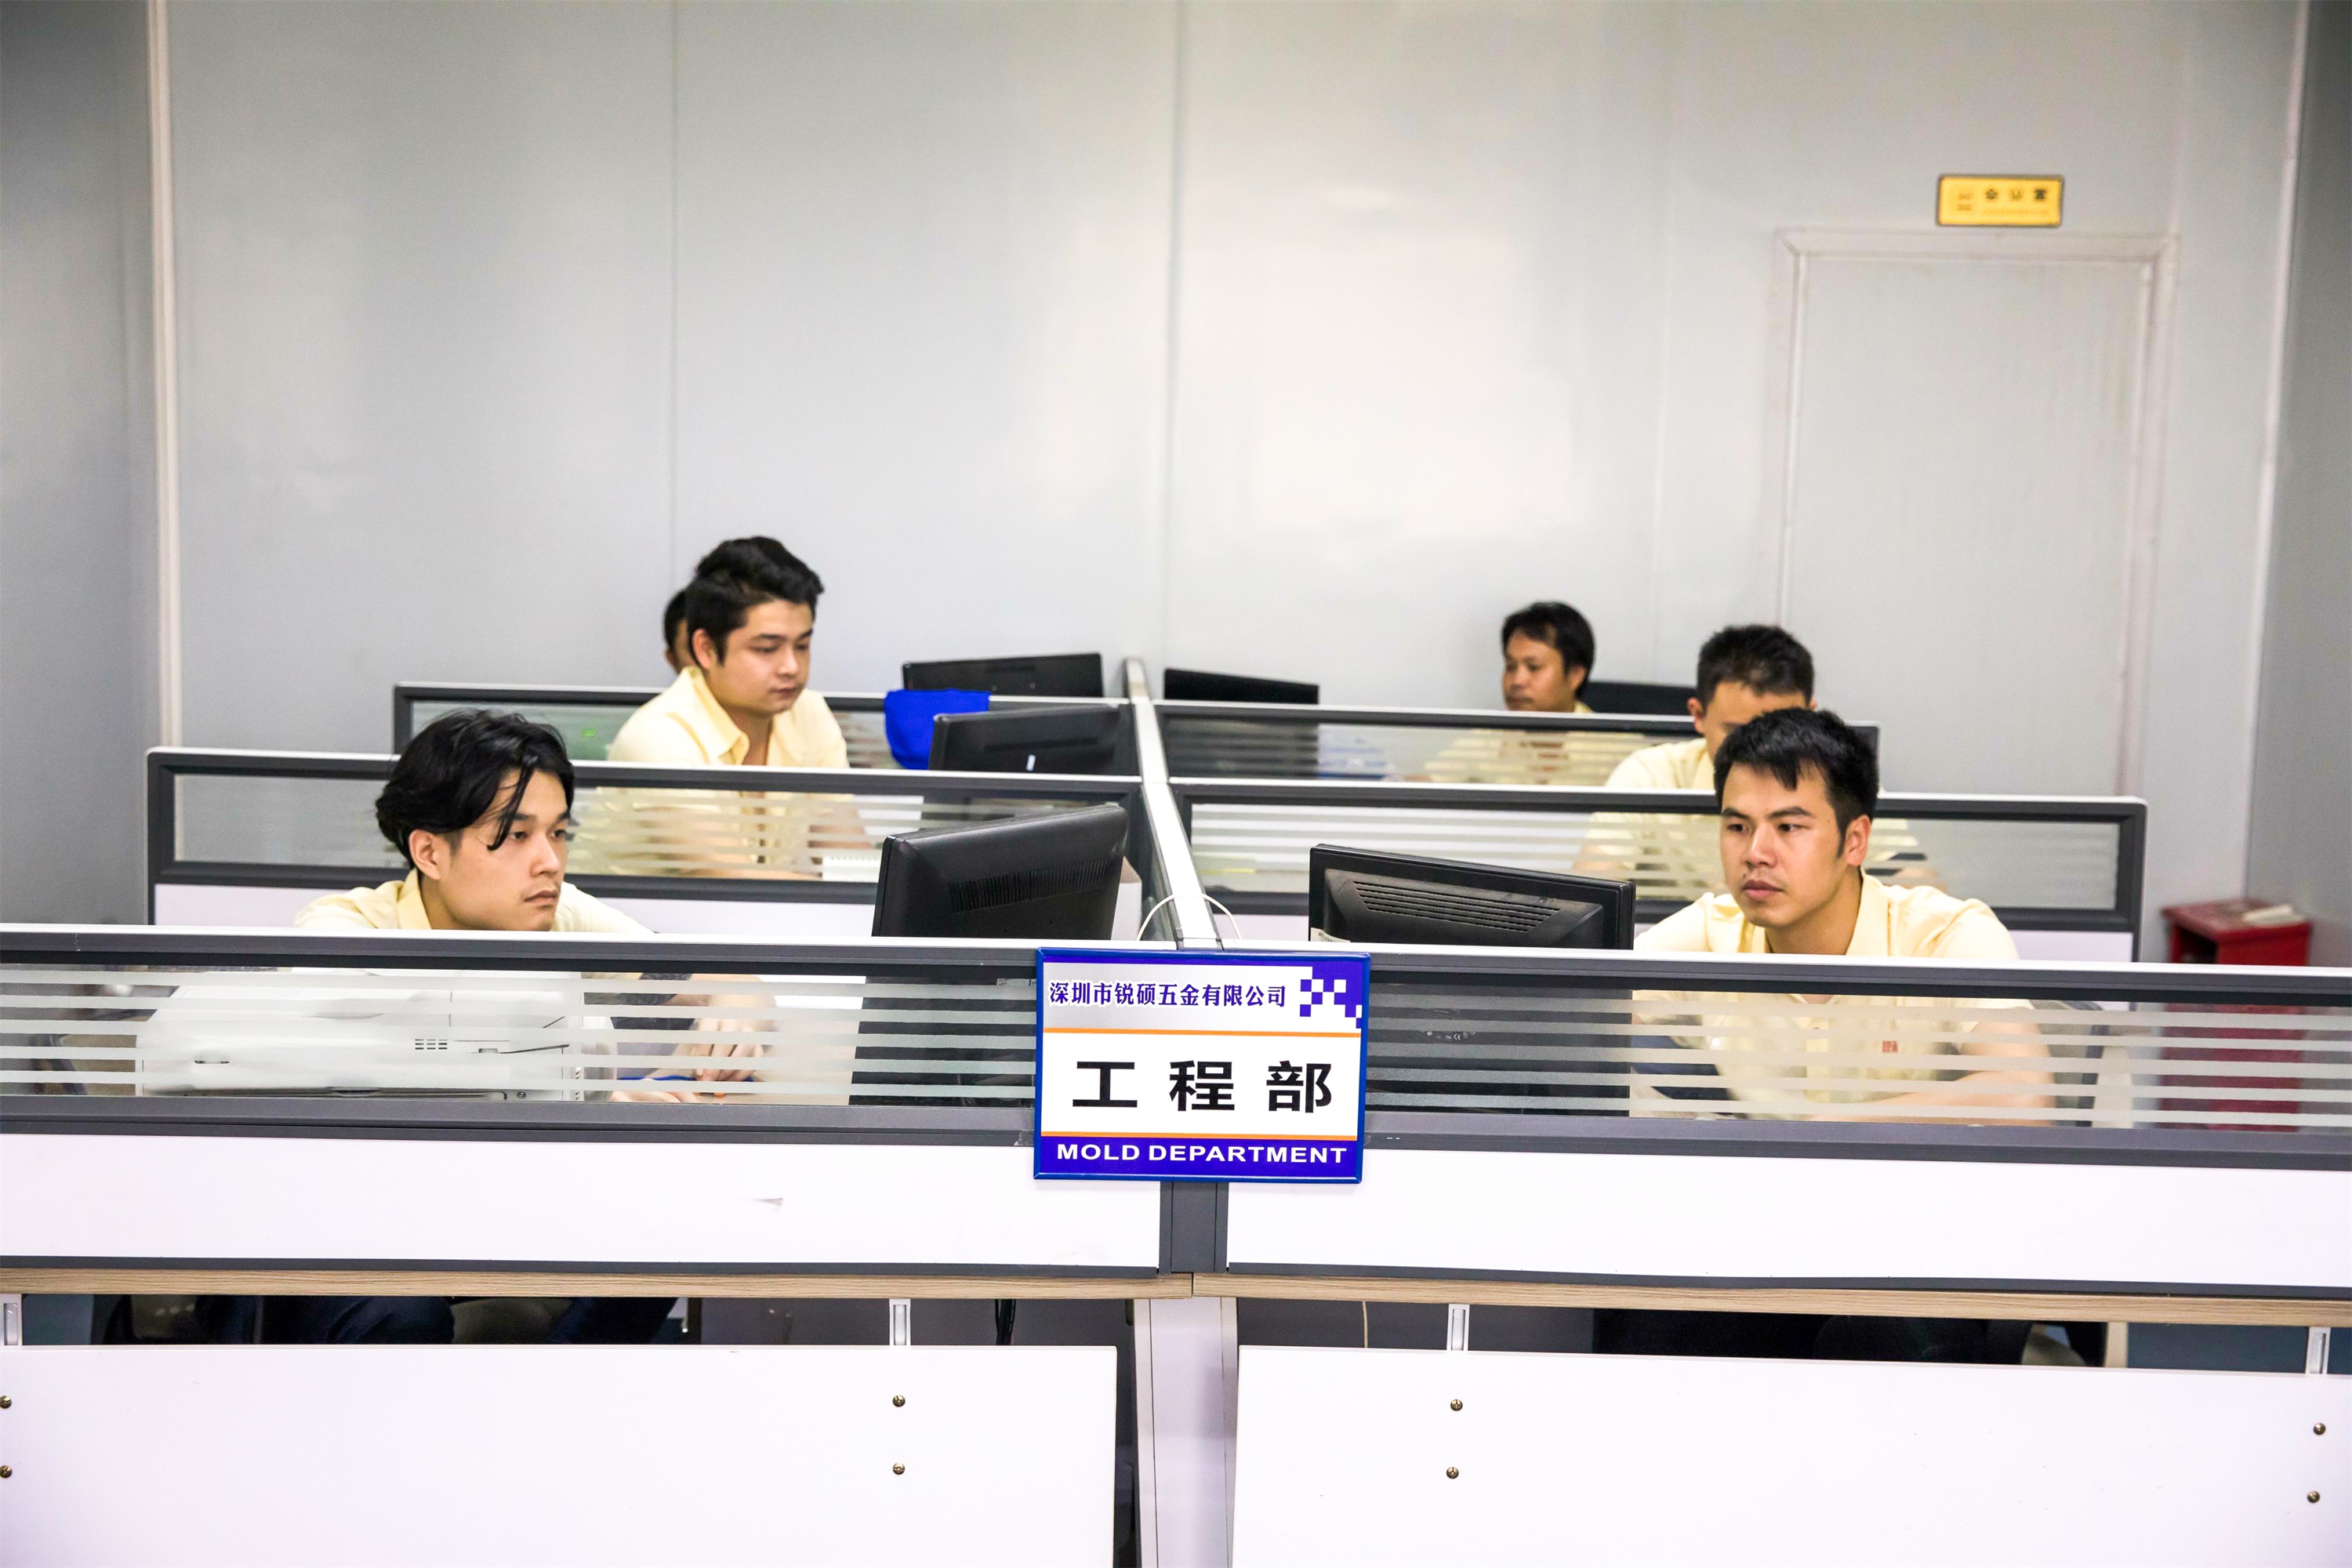 五金沖壓-沖壓加工,經驗優勢600家中國企業的共同選擇